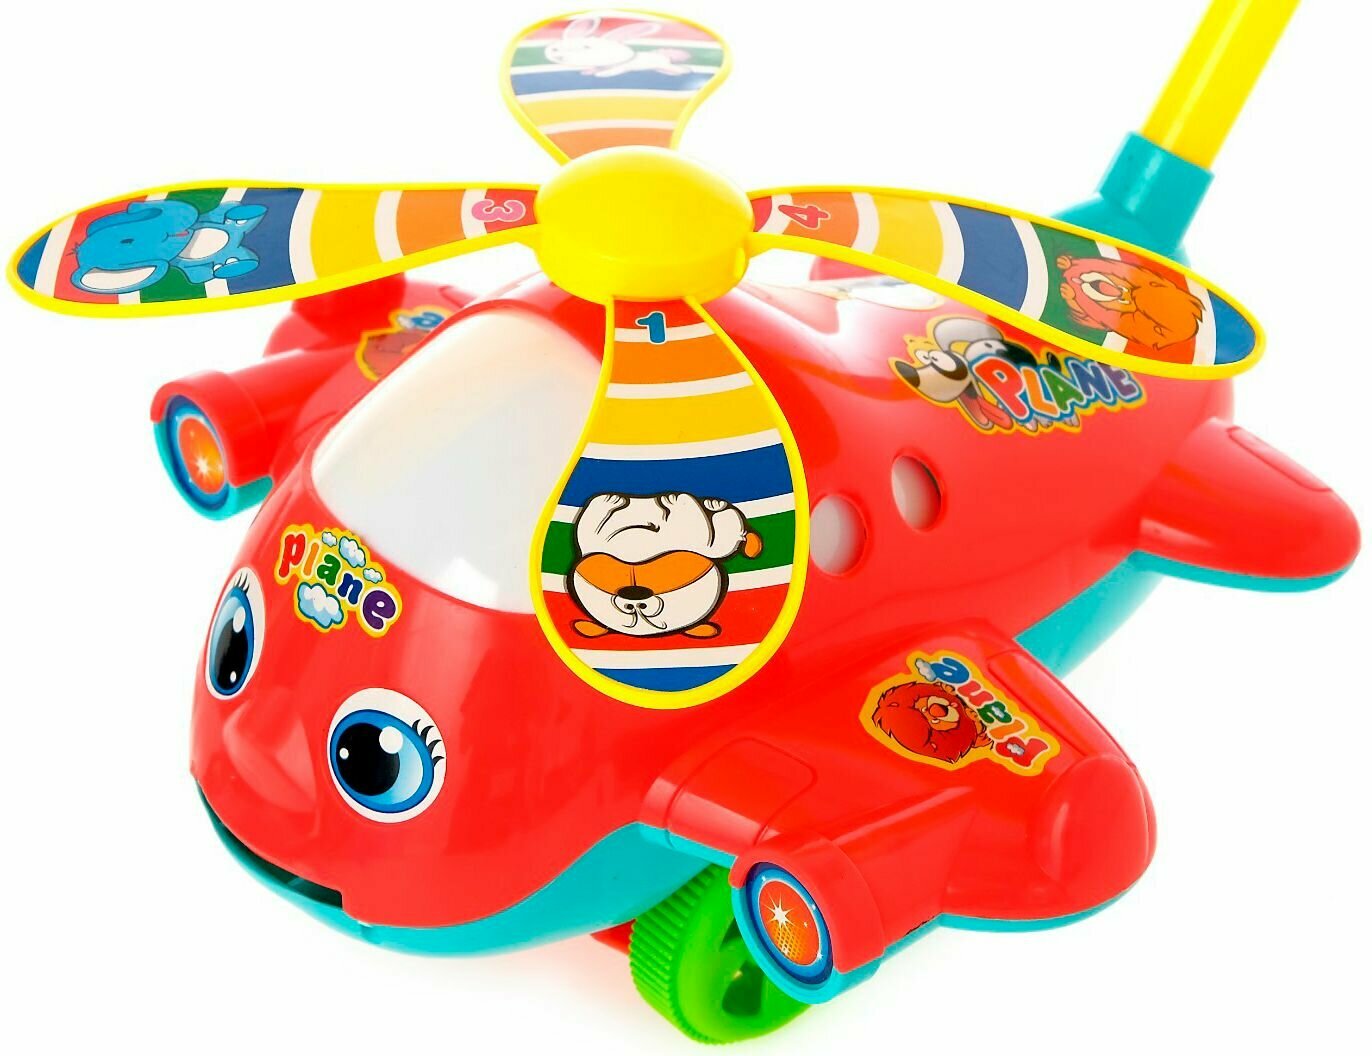 Детская каталка "Вертолёт" с ручкой, игрушка на палочке для дома и улицы